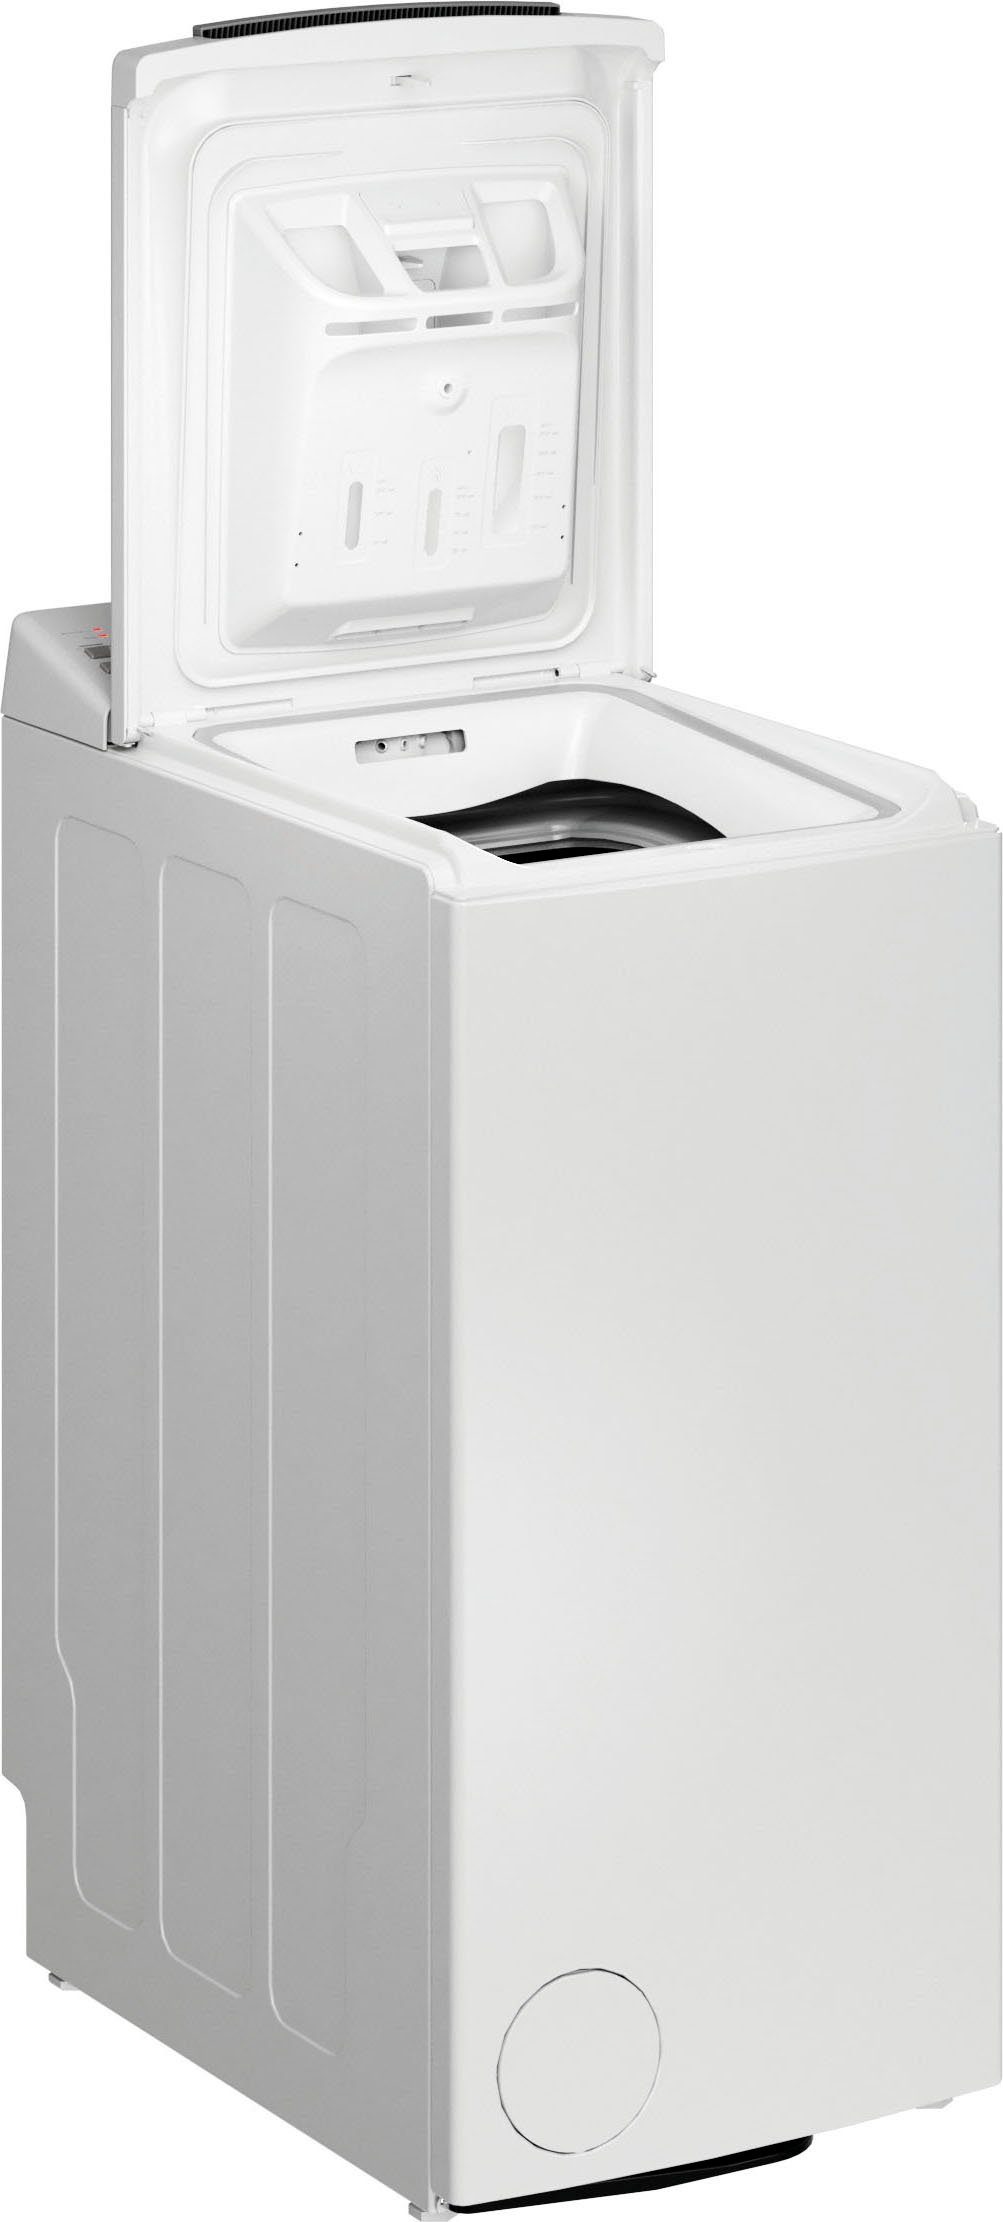 BAUKNECHT Waschmaschine Toplader 6 1200 6513 kg, WMT U/min B5